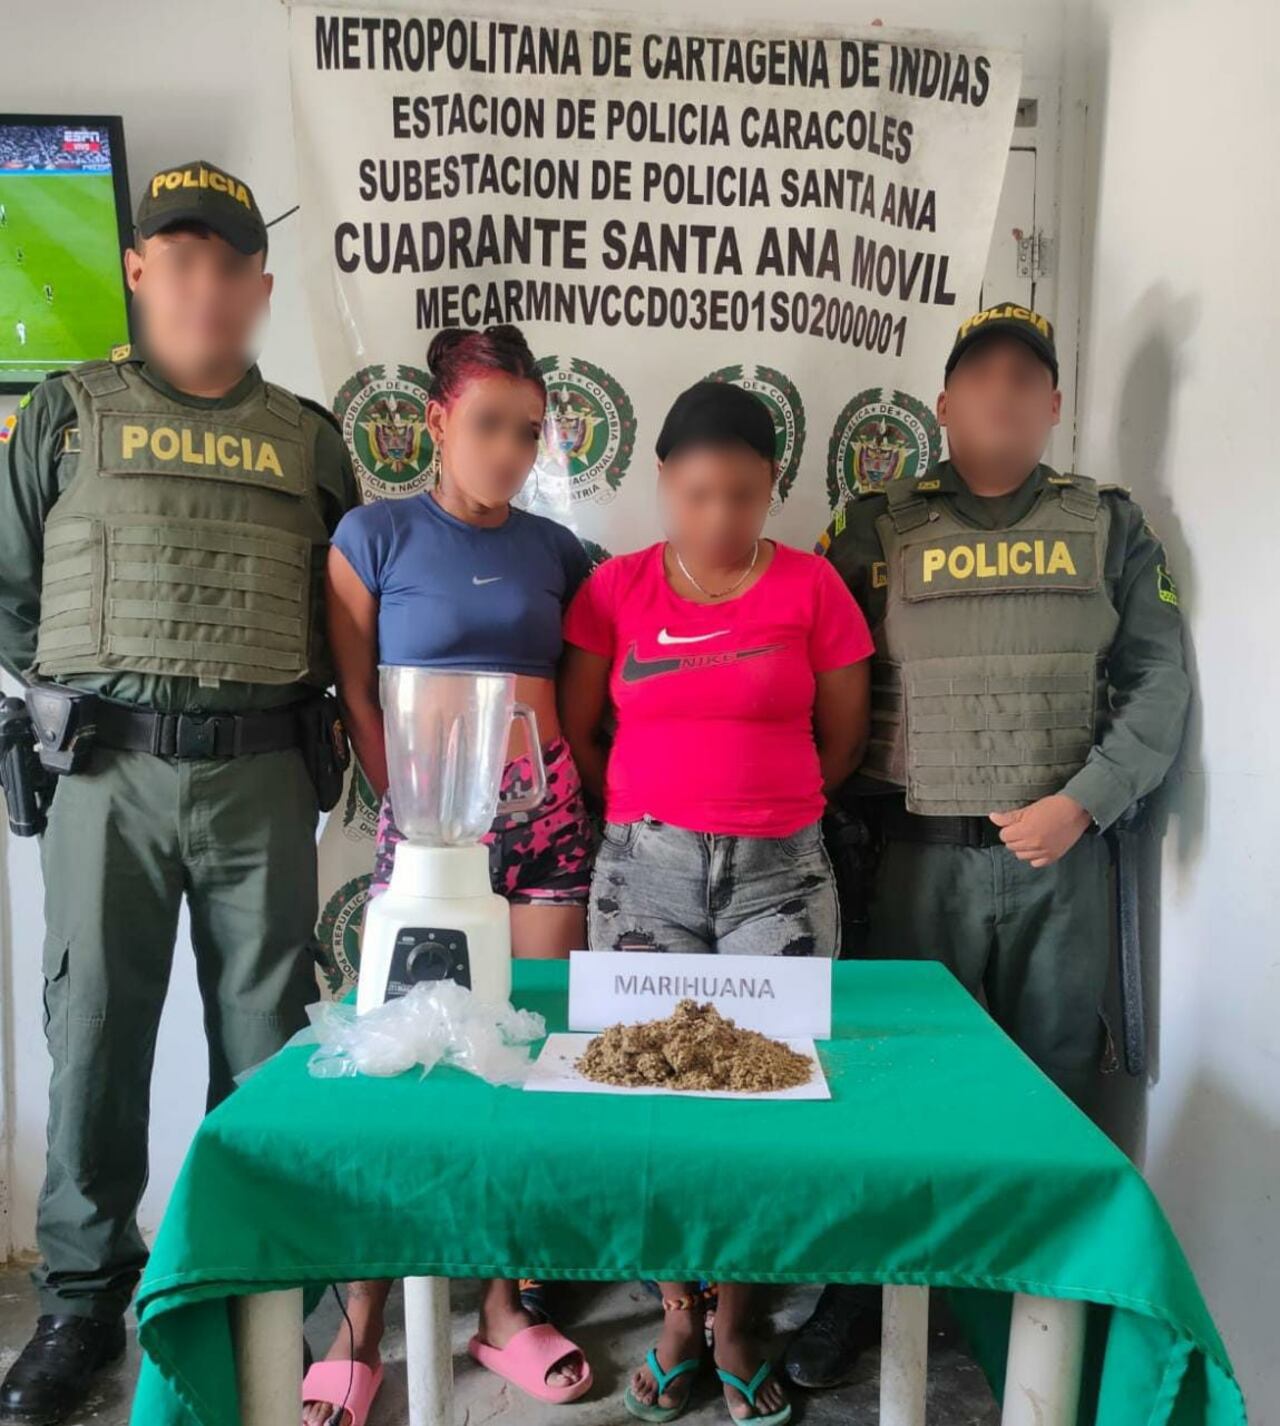 La captura se efectuó en el corregimiento de Santa Ana, jurisdicción de la Policía de Cartagena